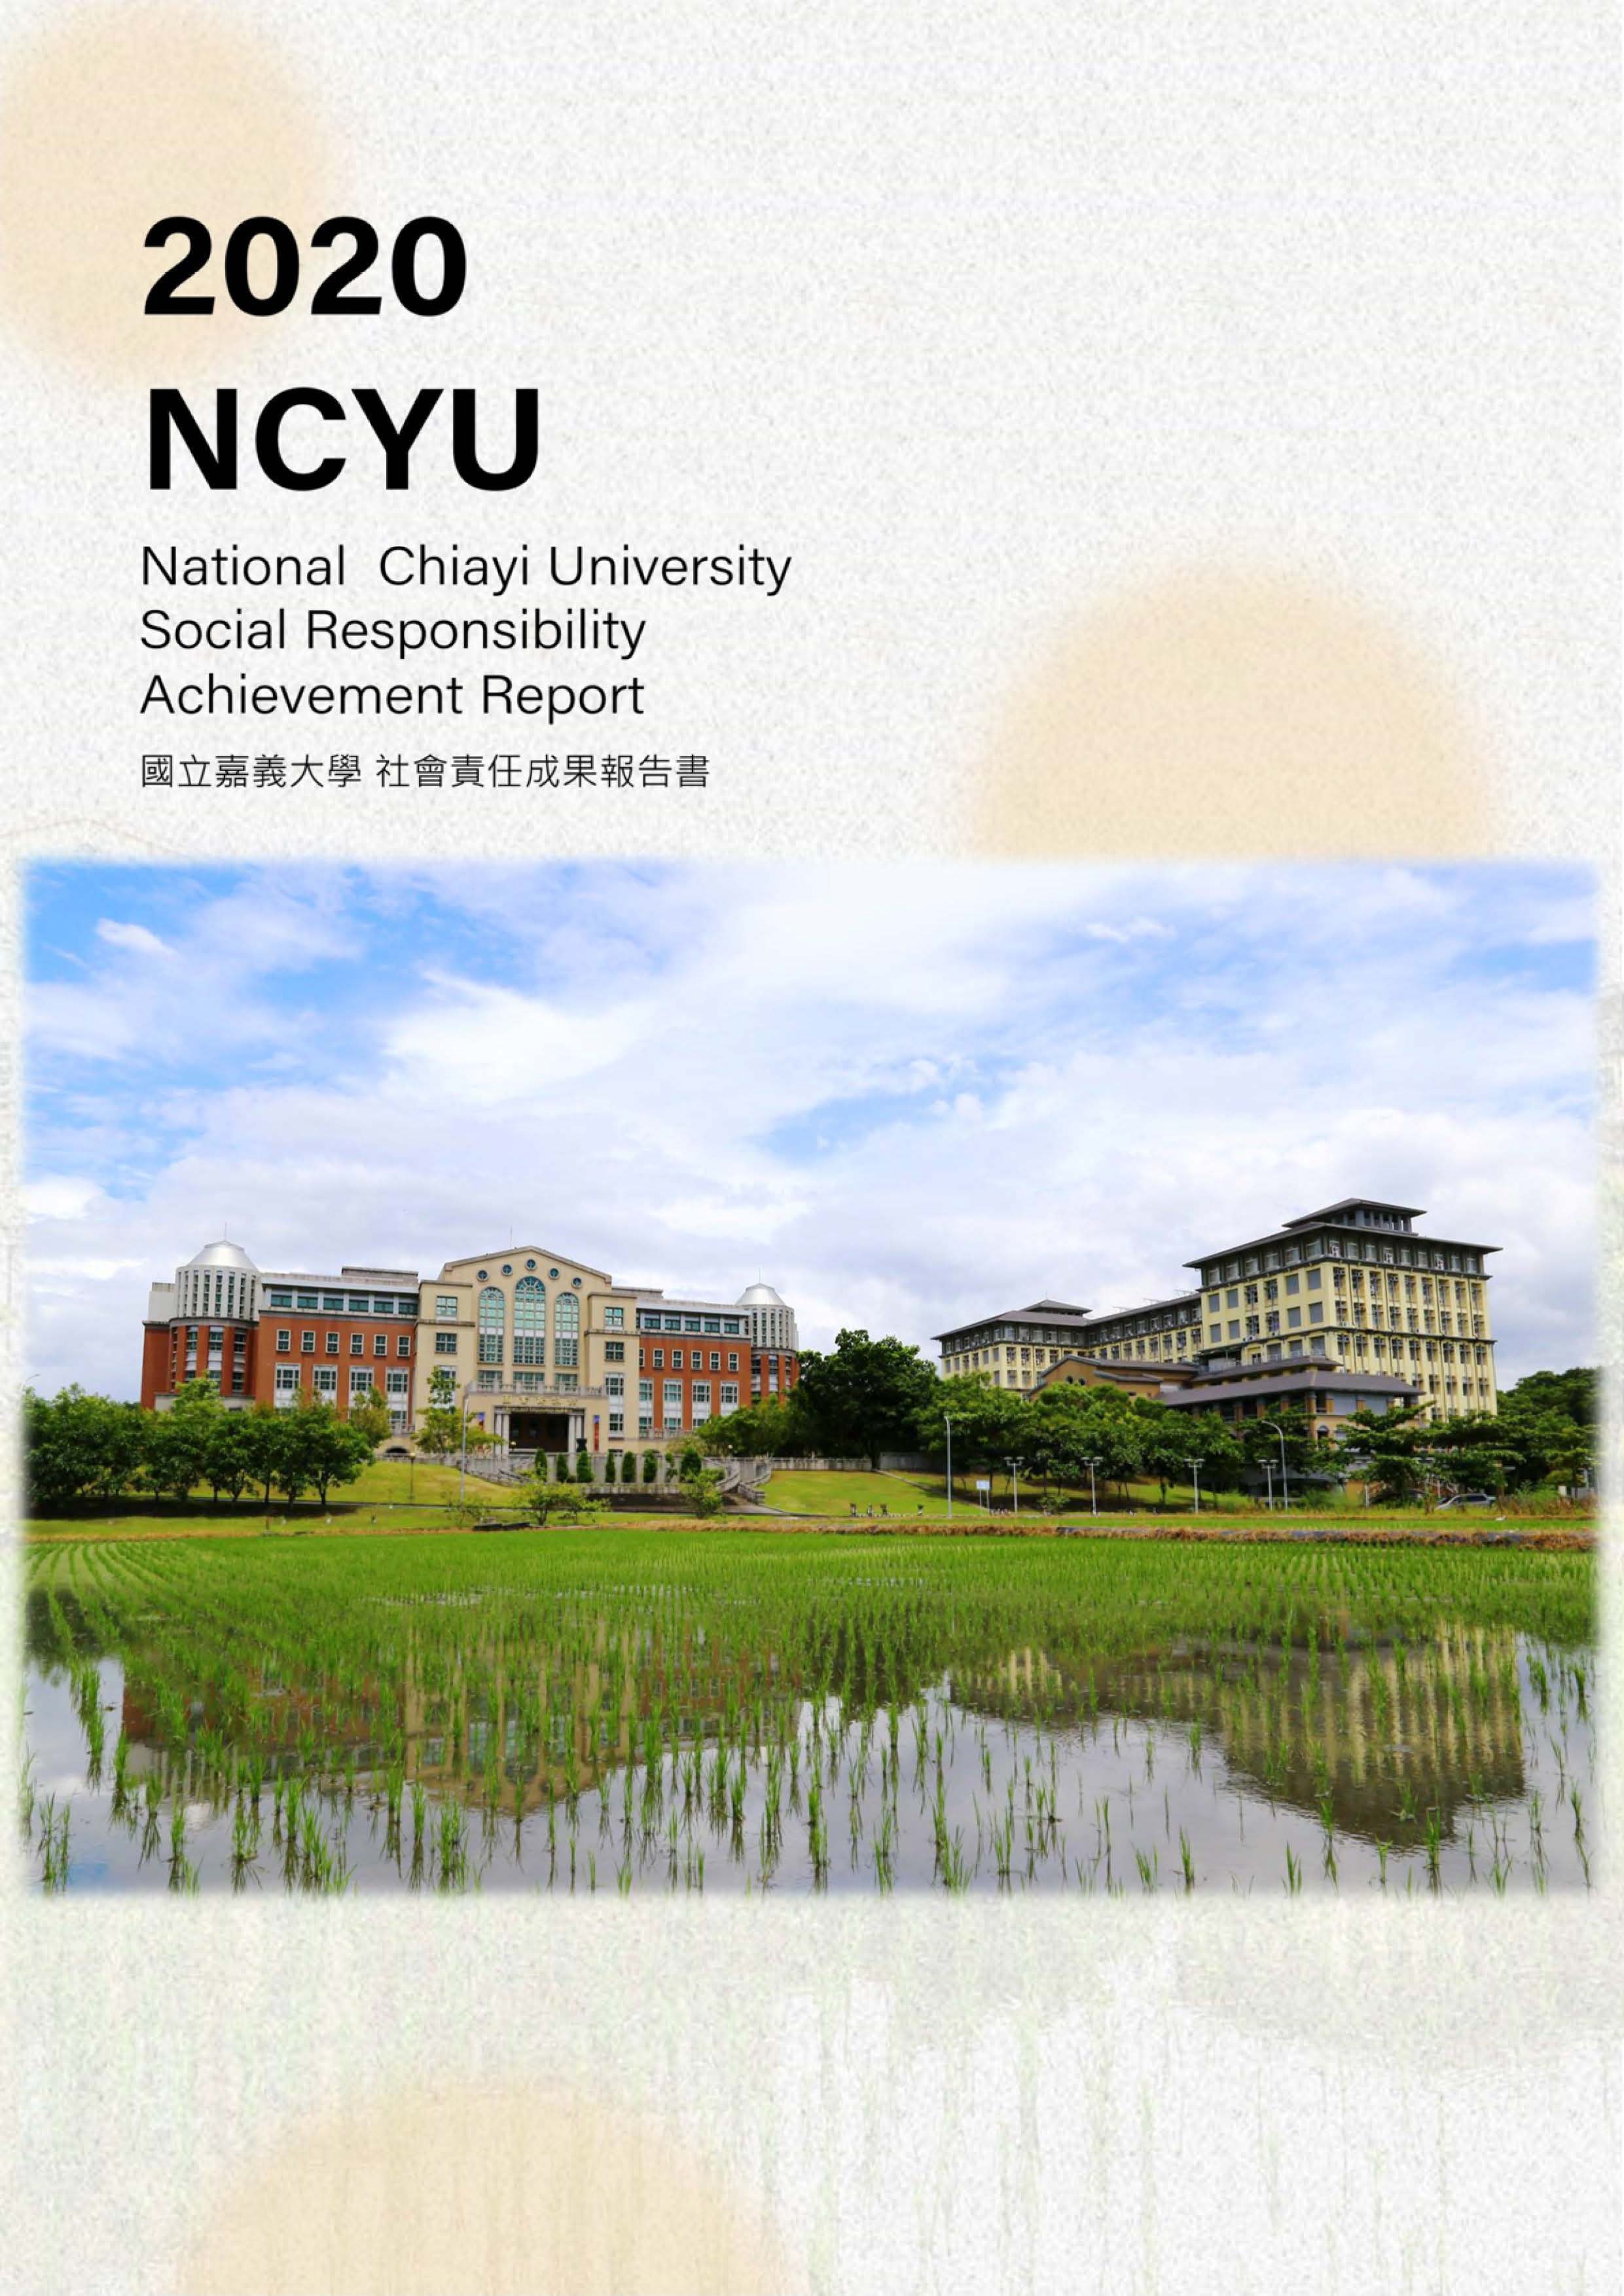 國立嘉義大學社會責任成果報告書. 2020年= National Chiayi University Social Responsibility Achievement Report 